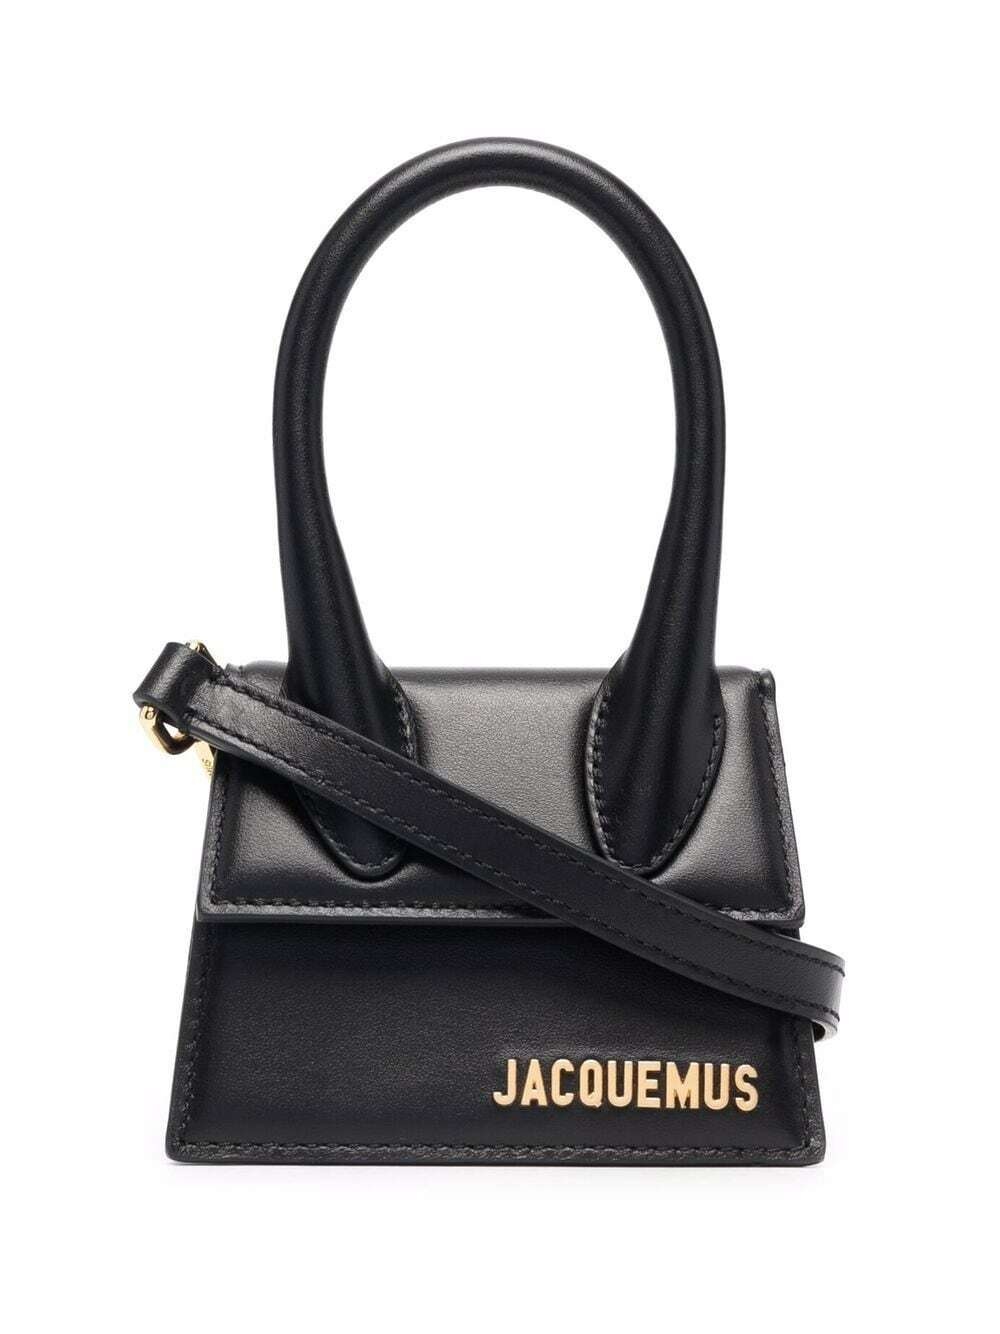 JACQUEMUS - Le Chiquito Mini Bag Jacquemus